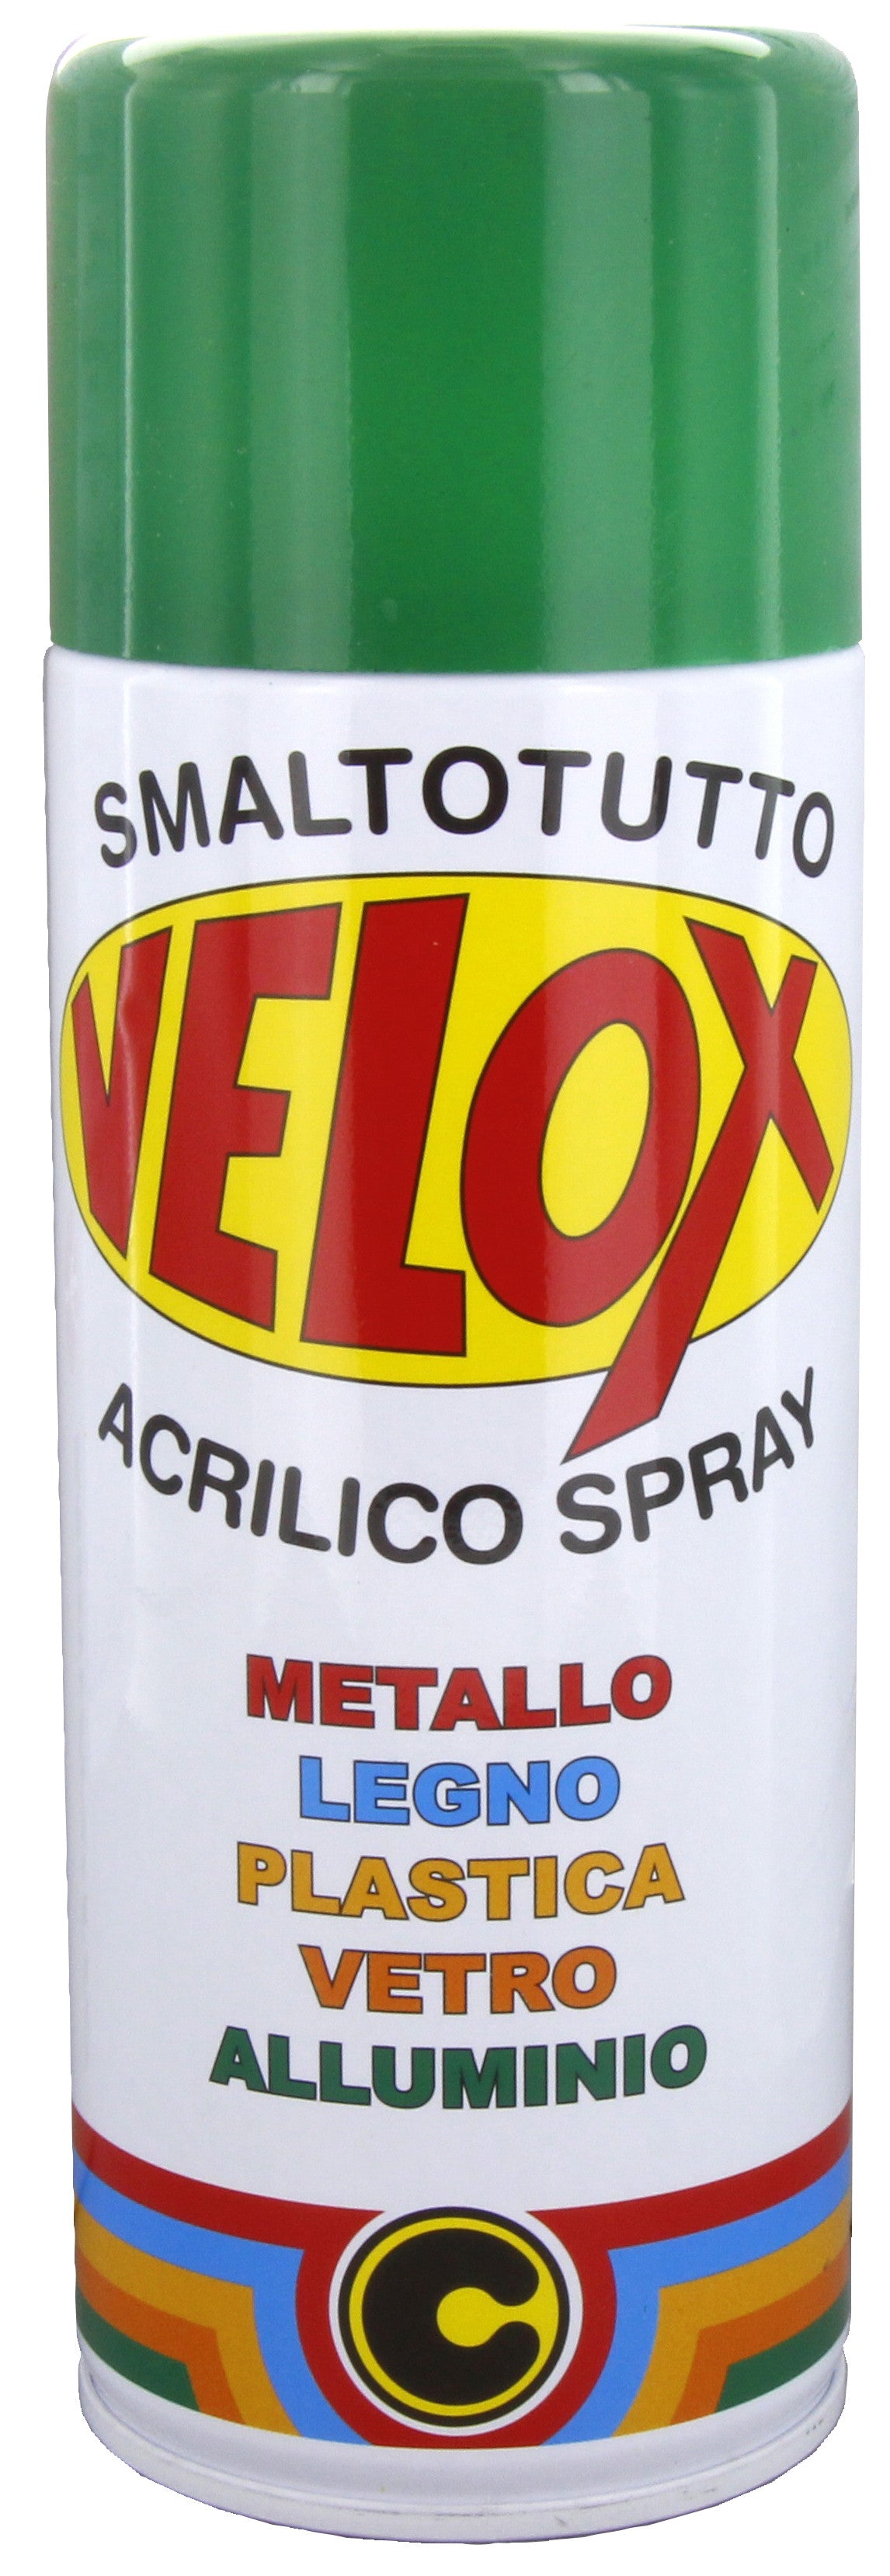 Velox spray acrilico verde menta ral 6029 ITAL G.E.T.E.